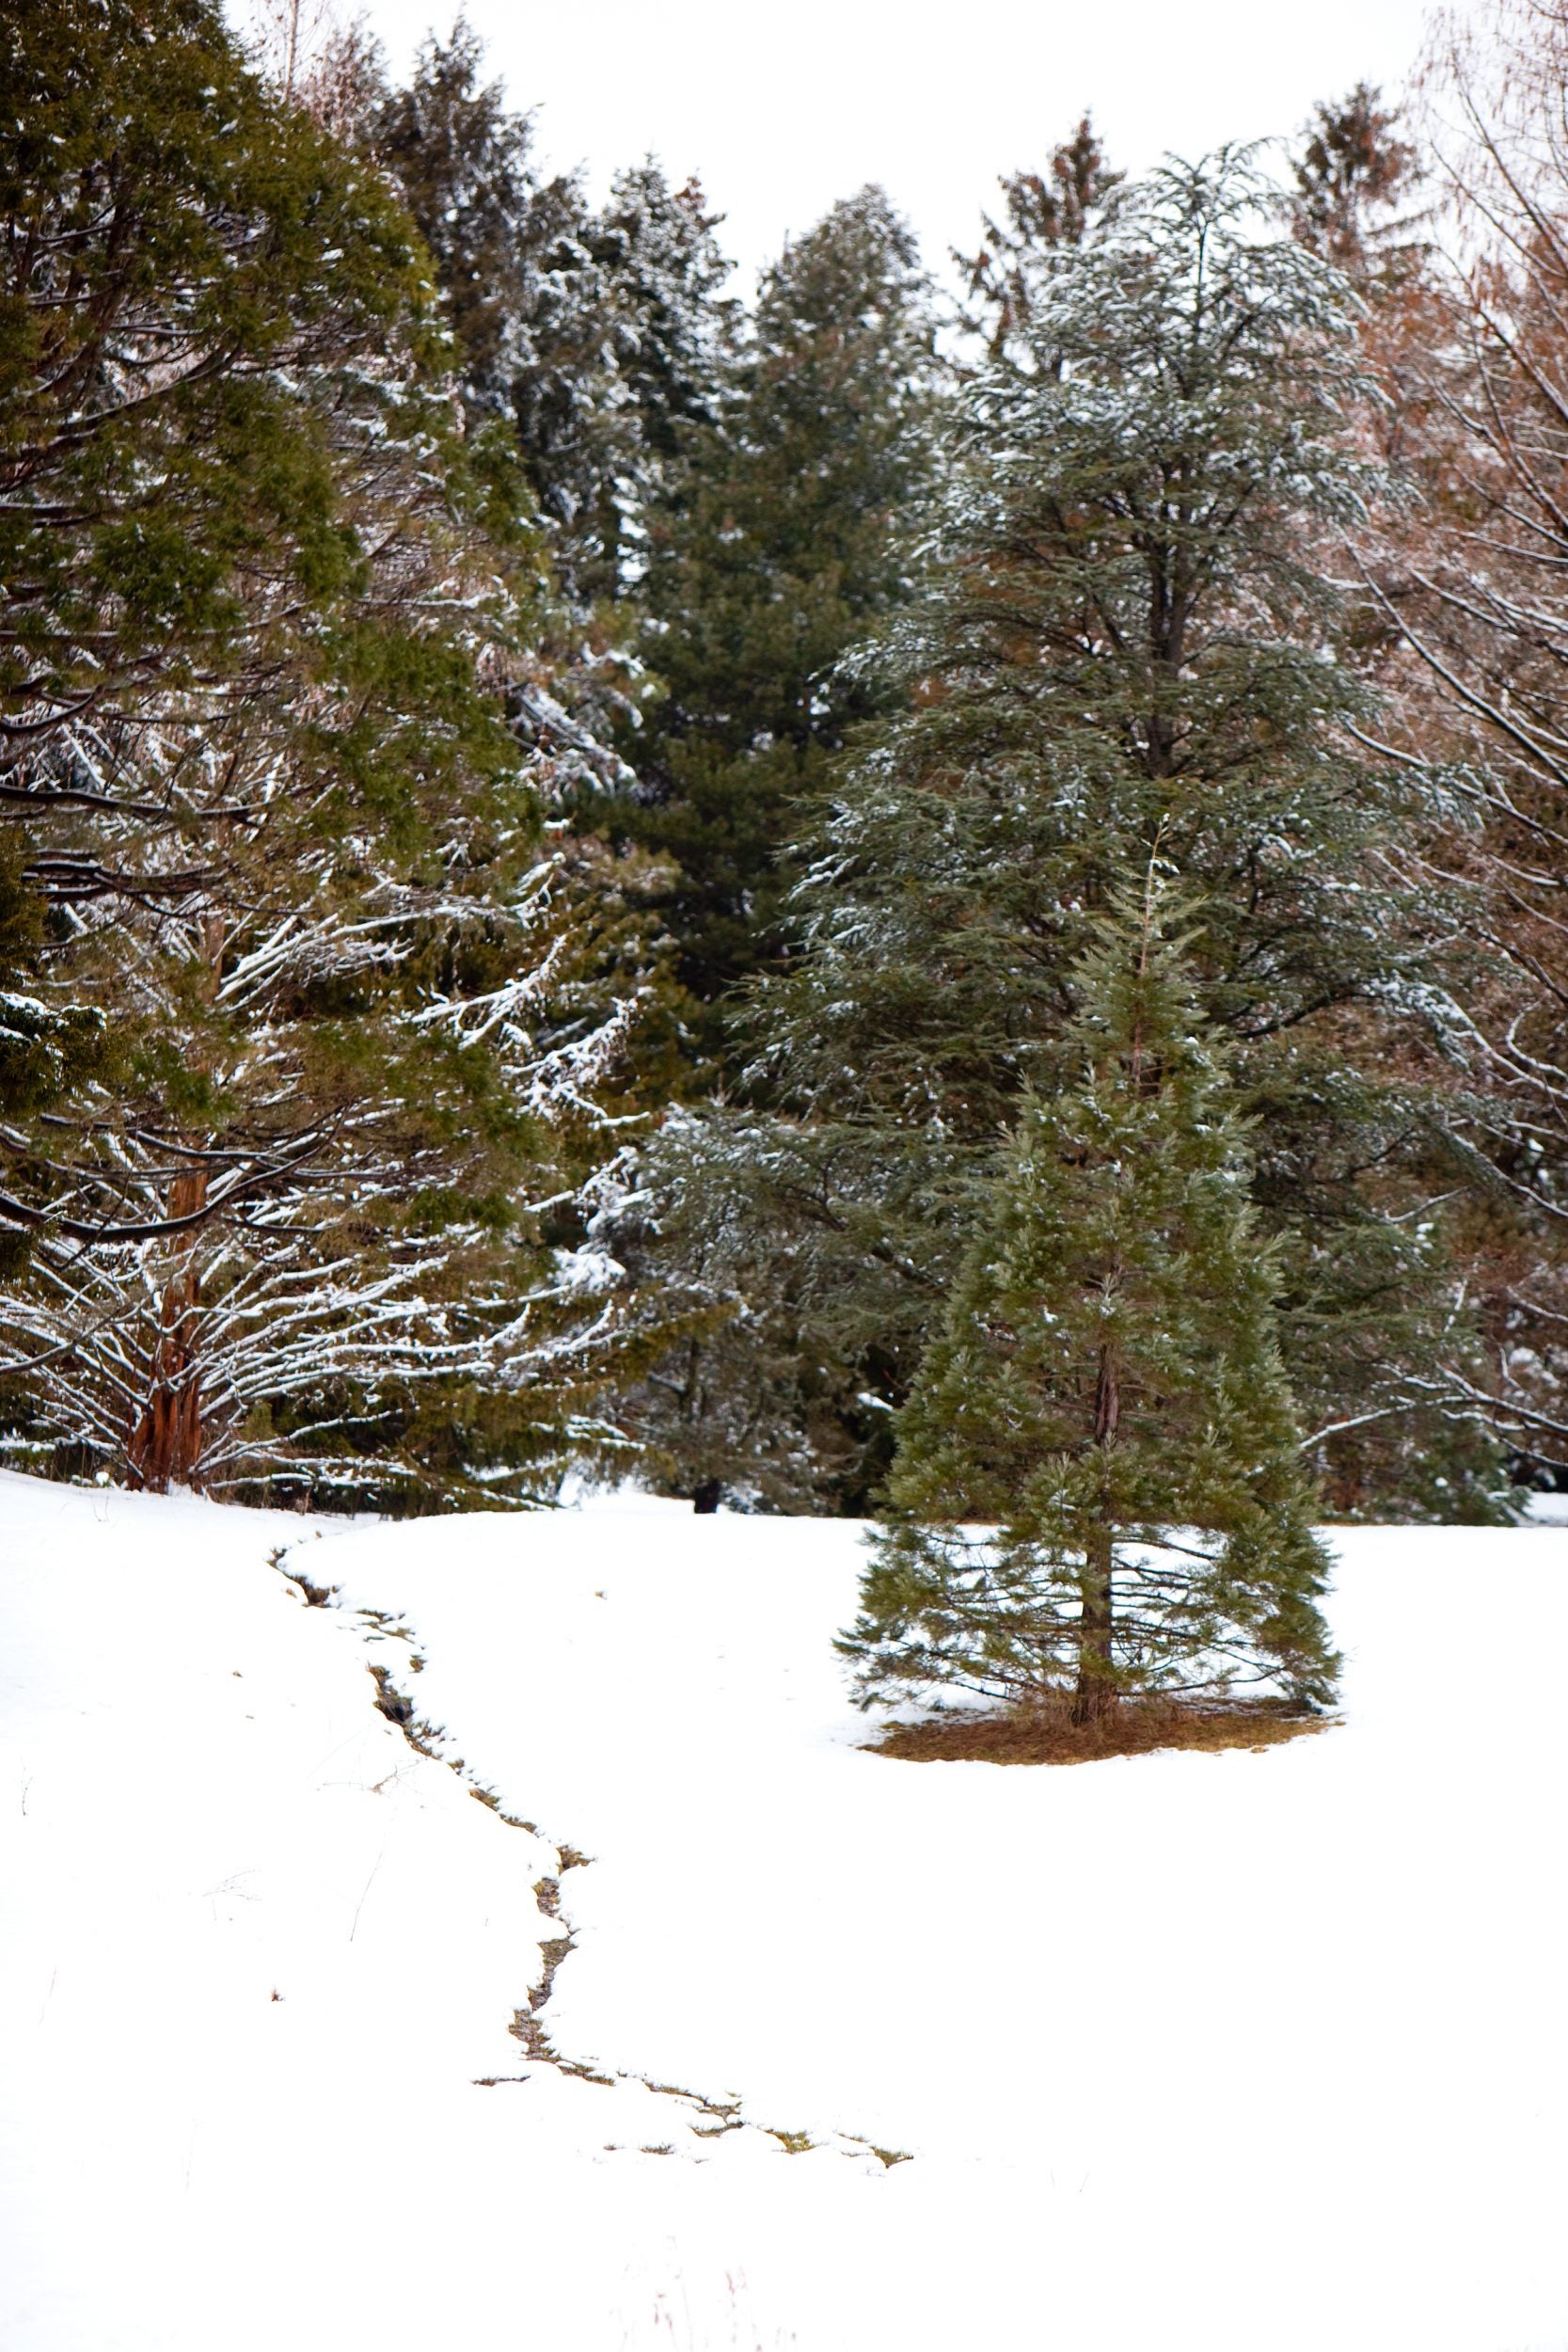 Arboretum blanketed in snow.